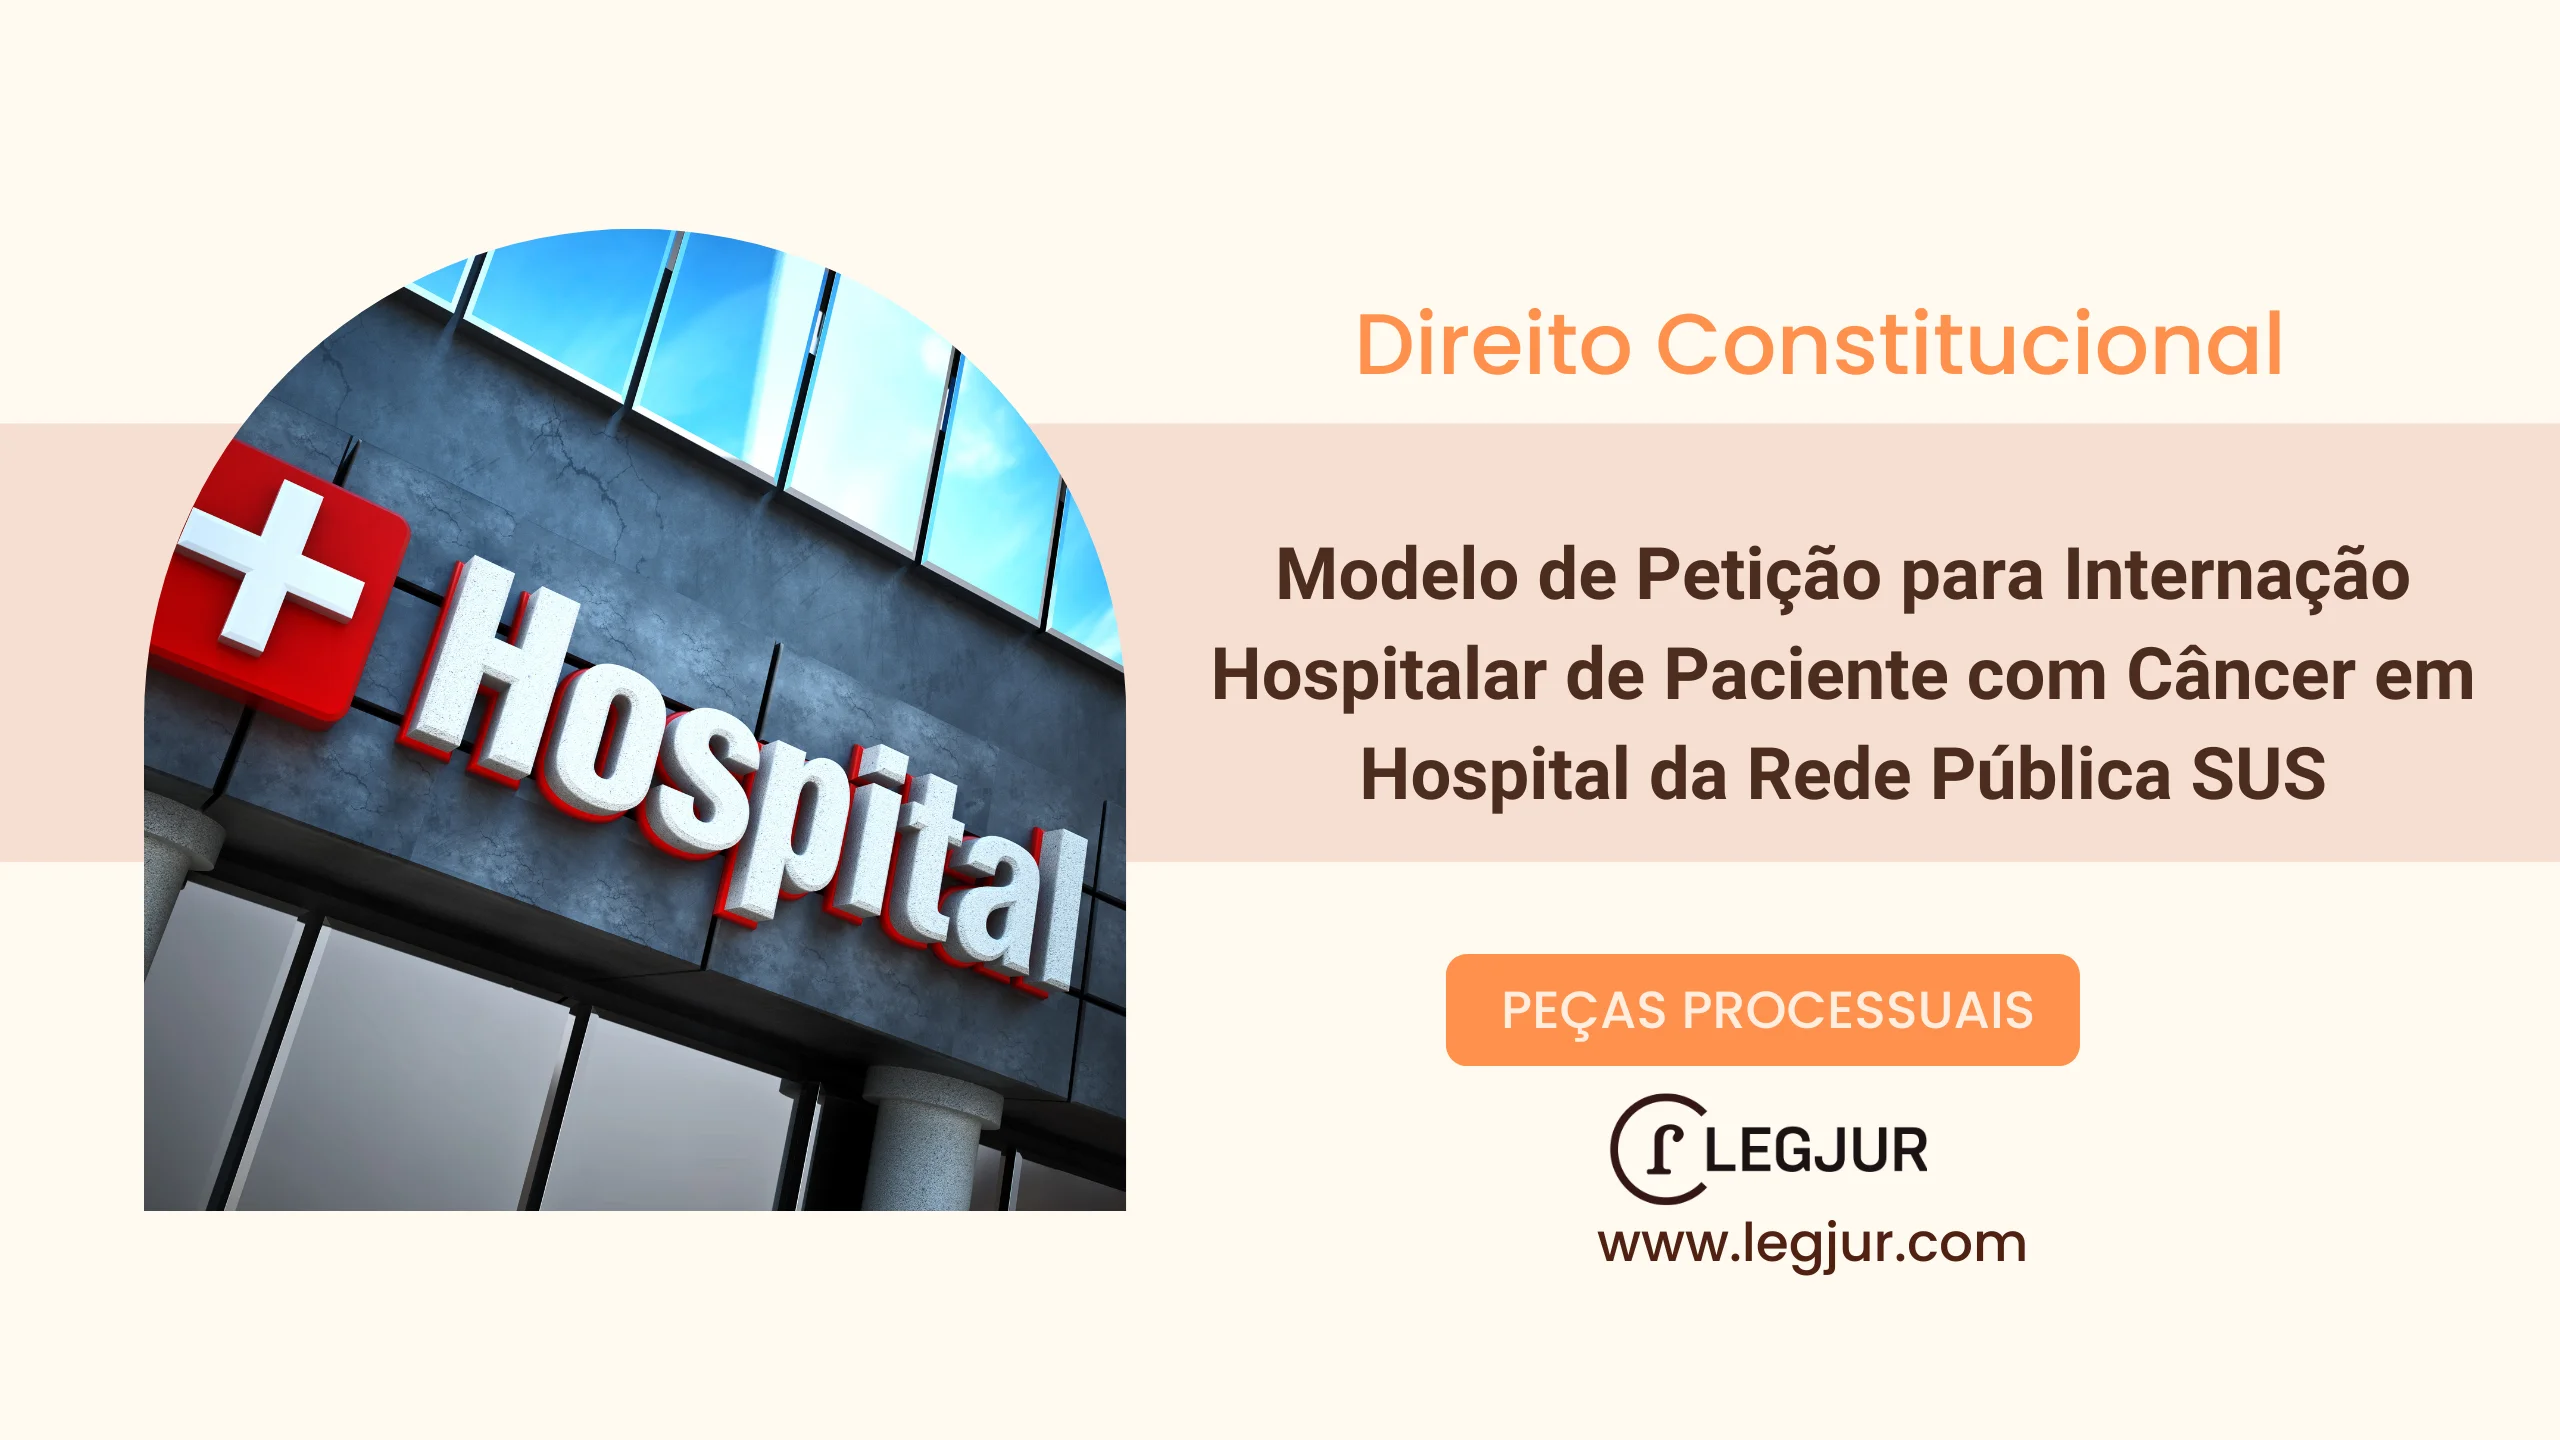 Modelo de Petição para Internação Hospitalar de Paciente com Câncer em Hospital da Rede Pública SUS